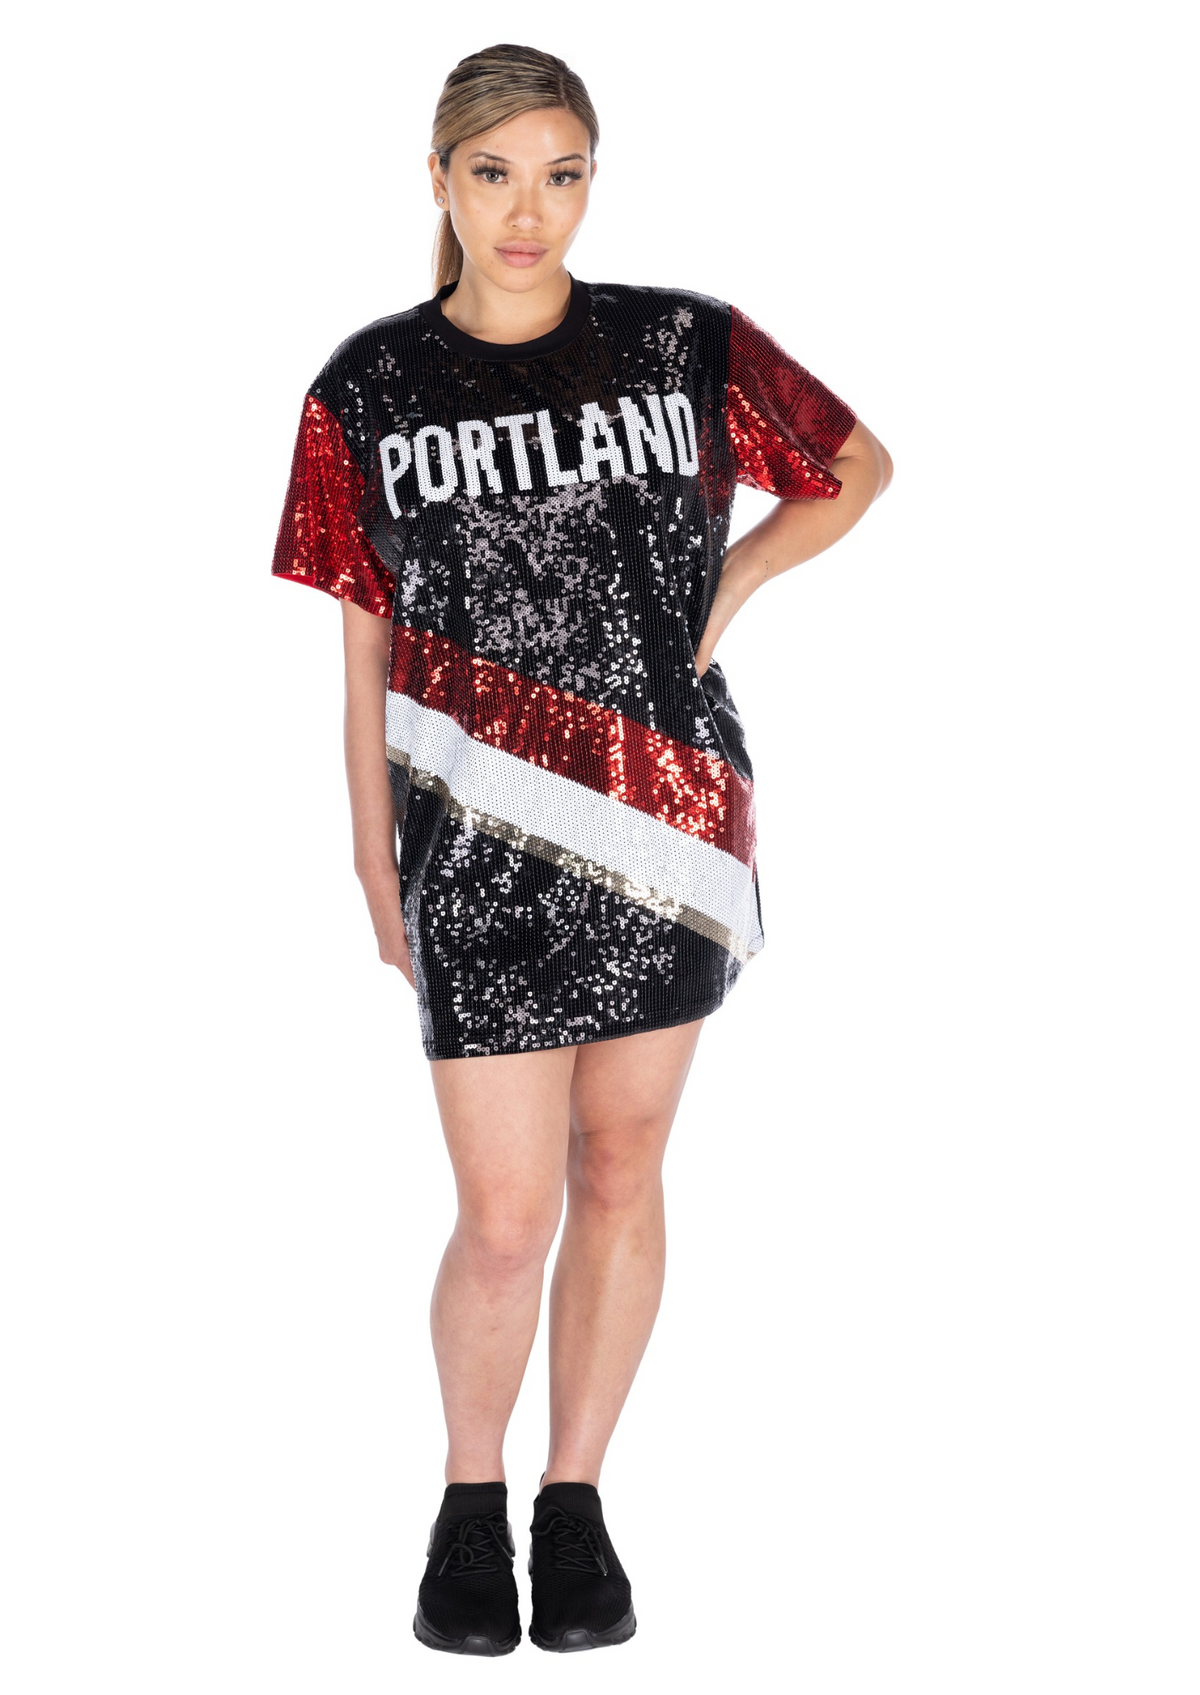 Portland Basketball Sequin Dress